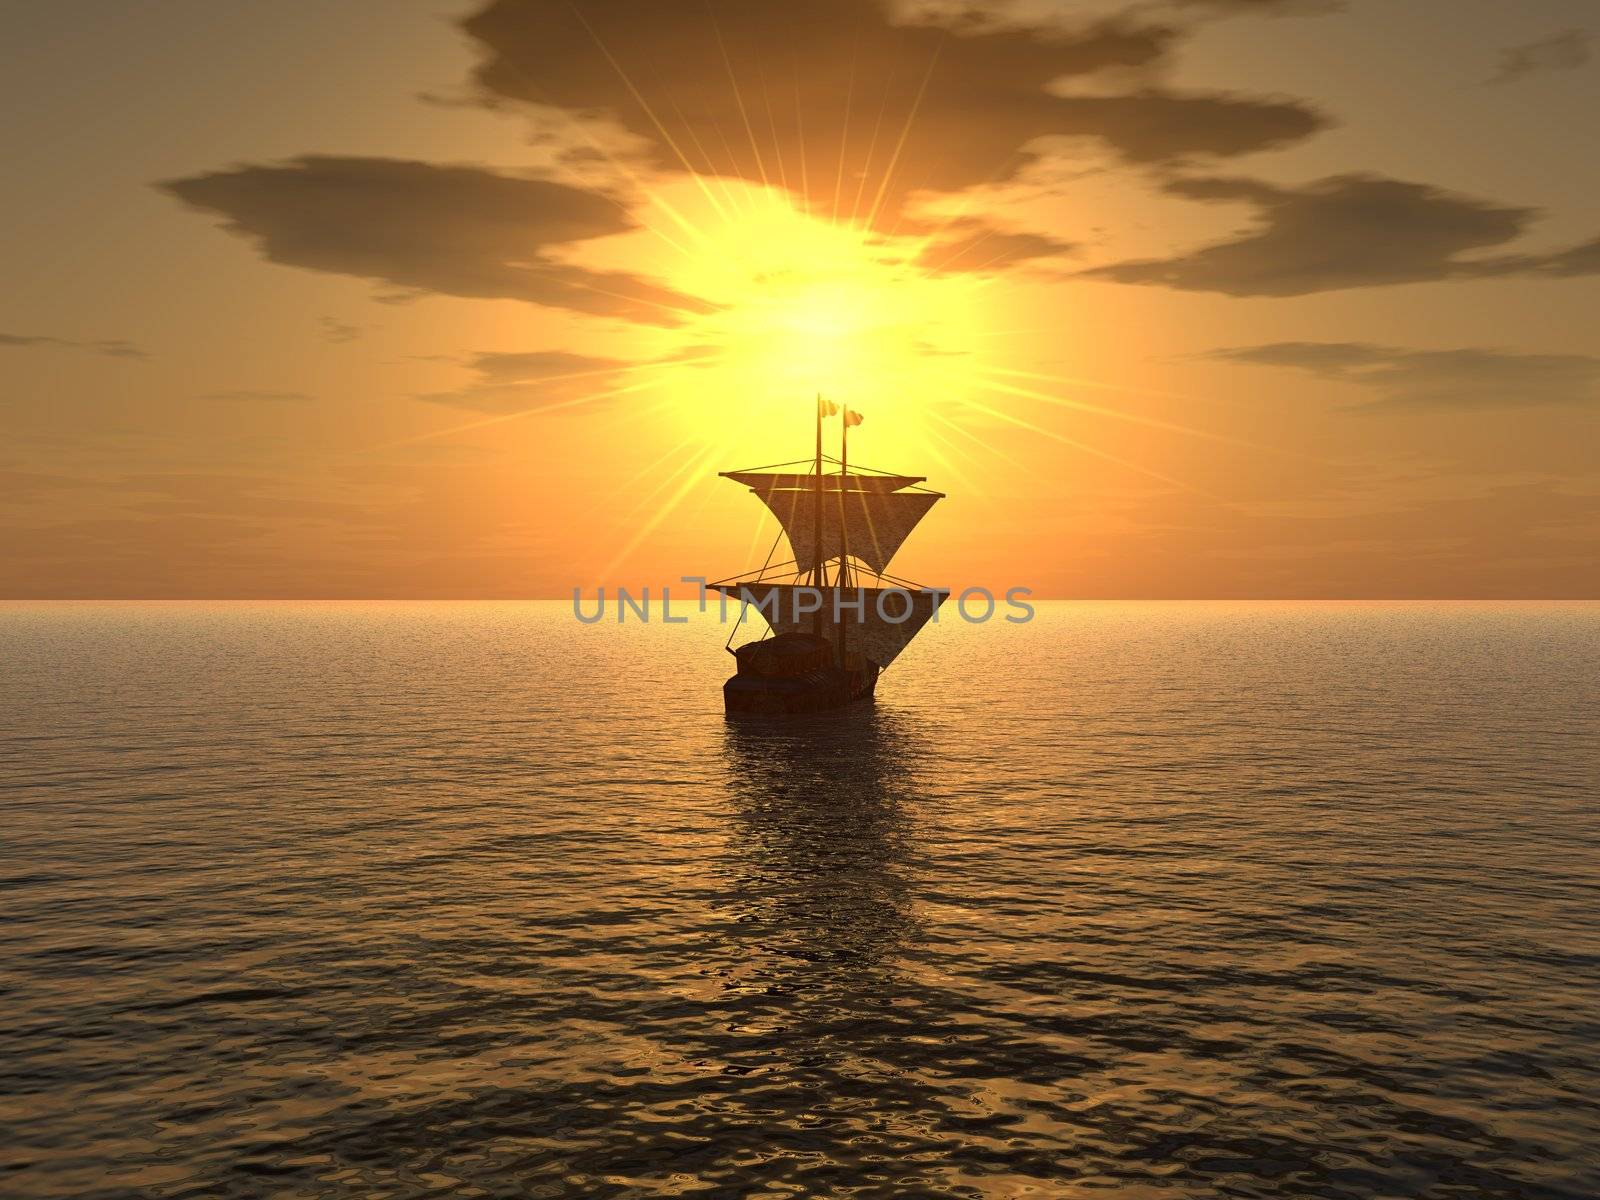 ship & sunset by galdzer